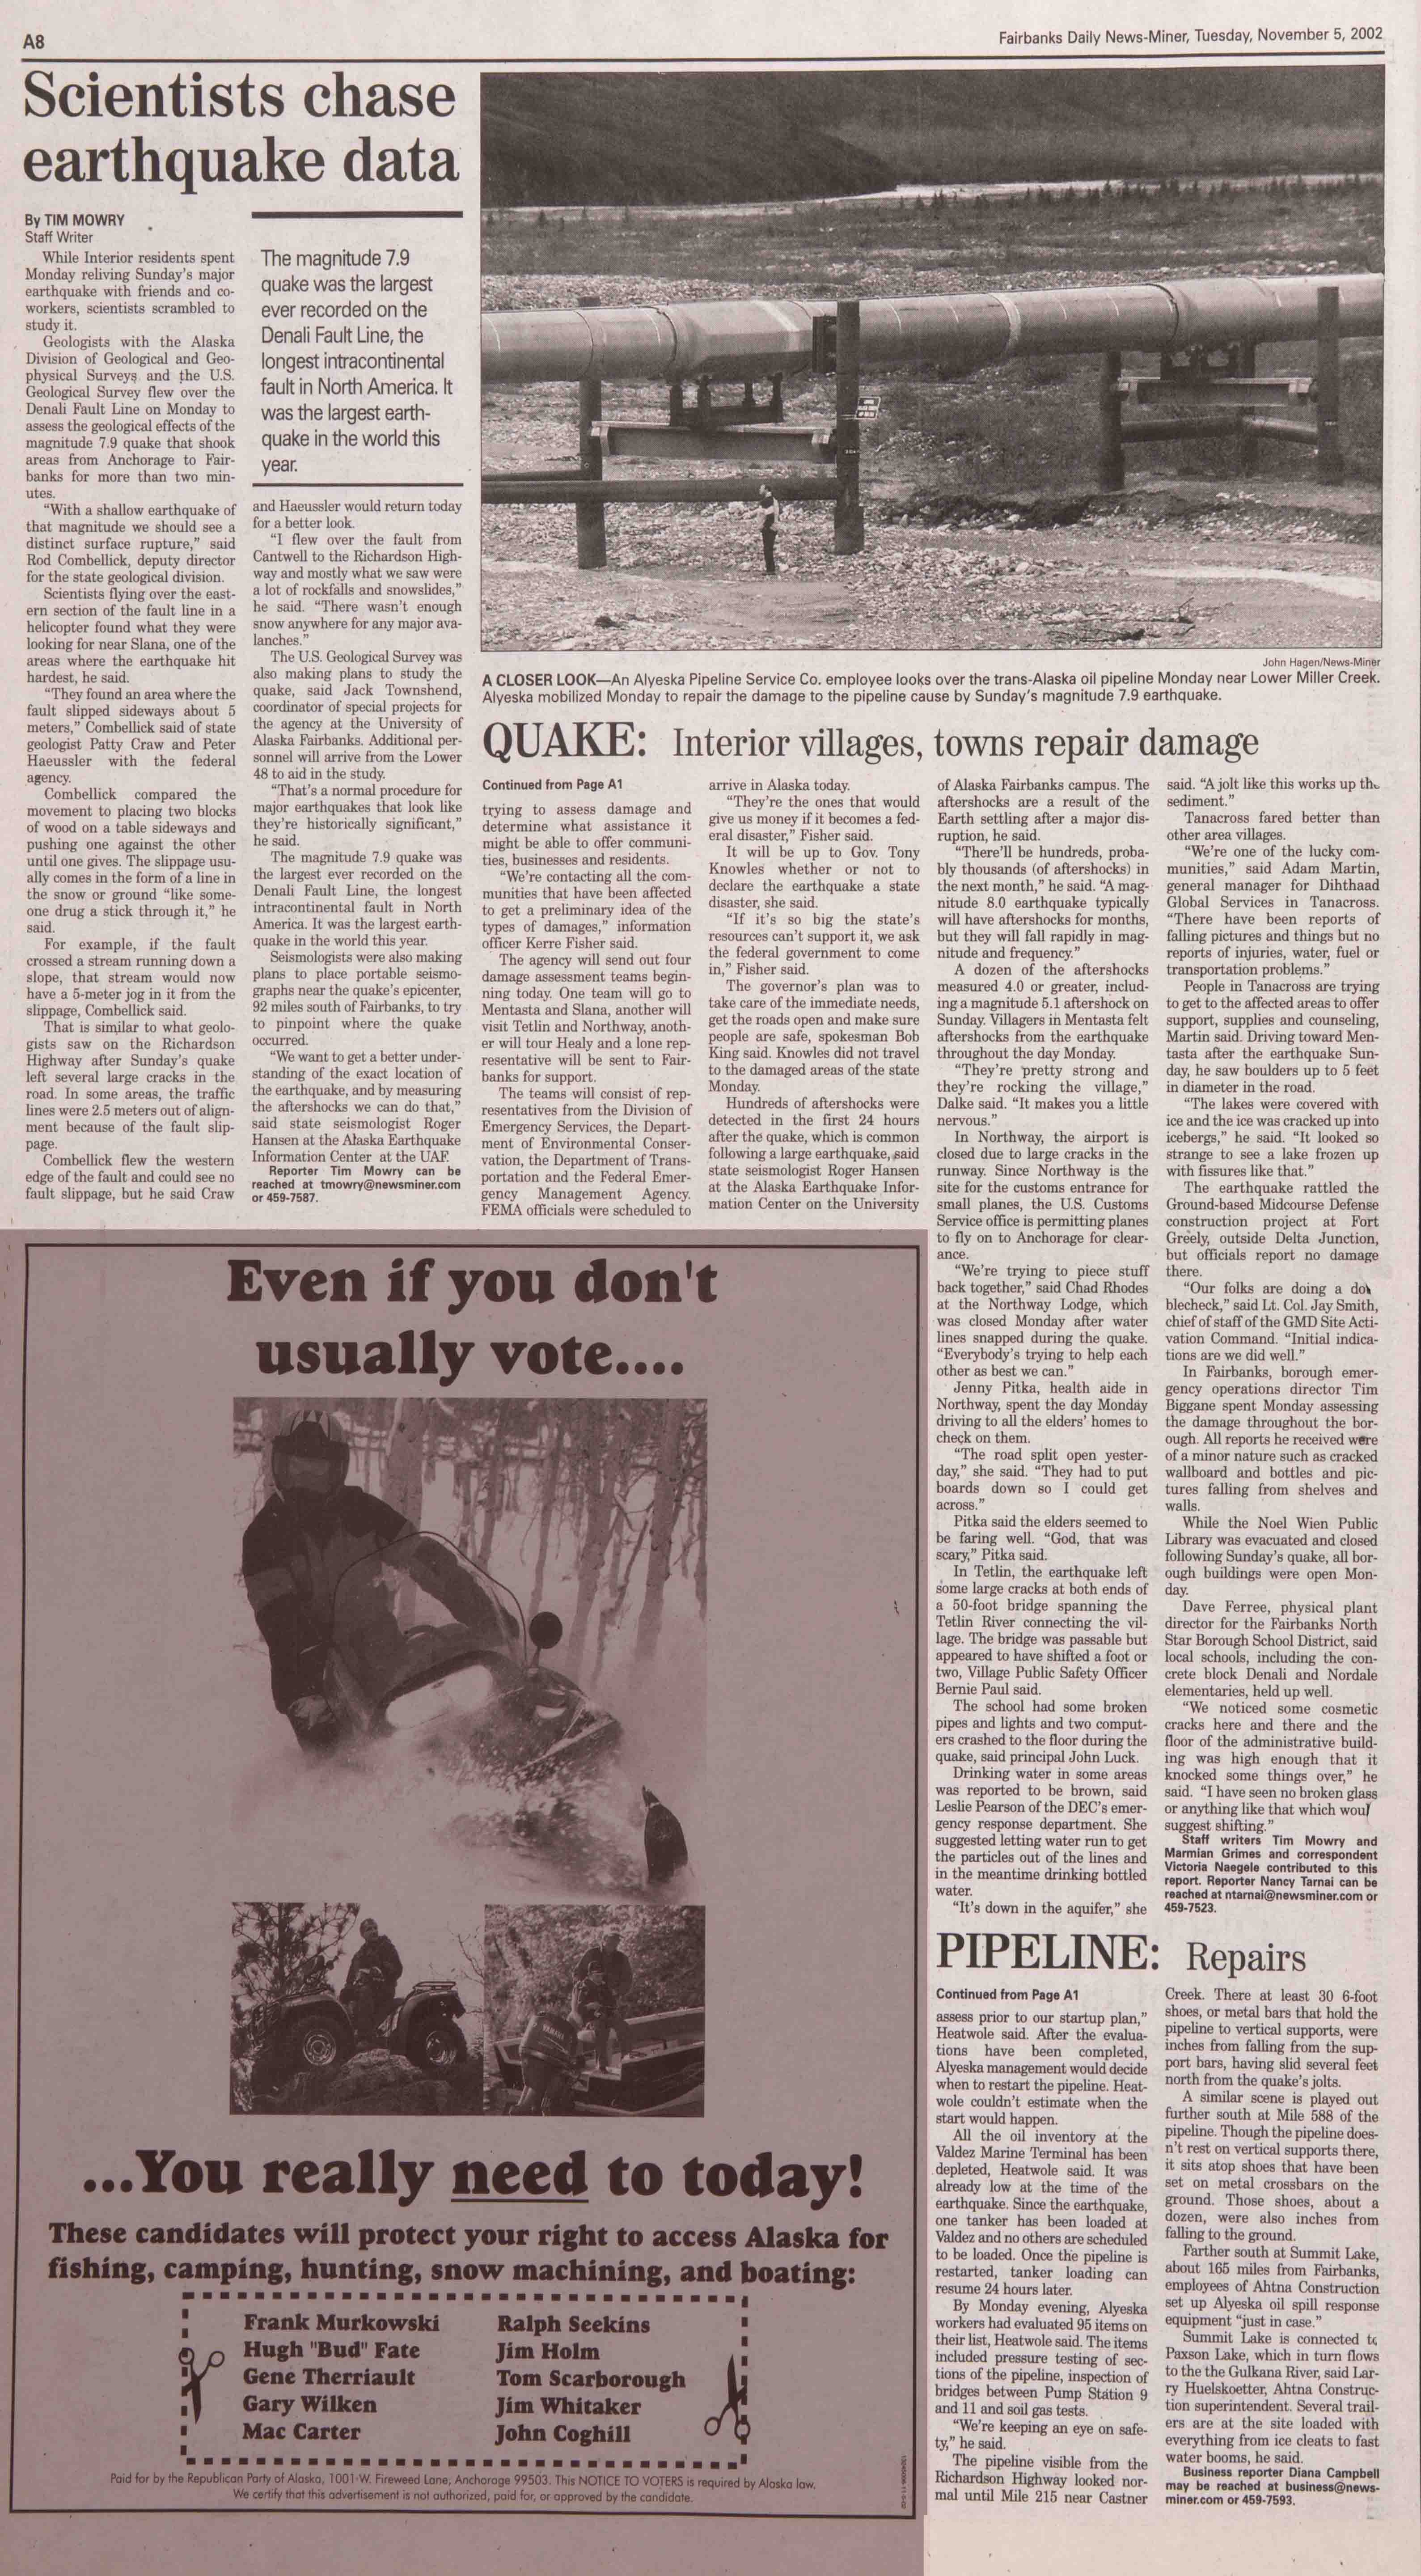 2002 November 5, Fairbanks Daily News-Miner (pg 8)